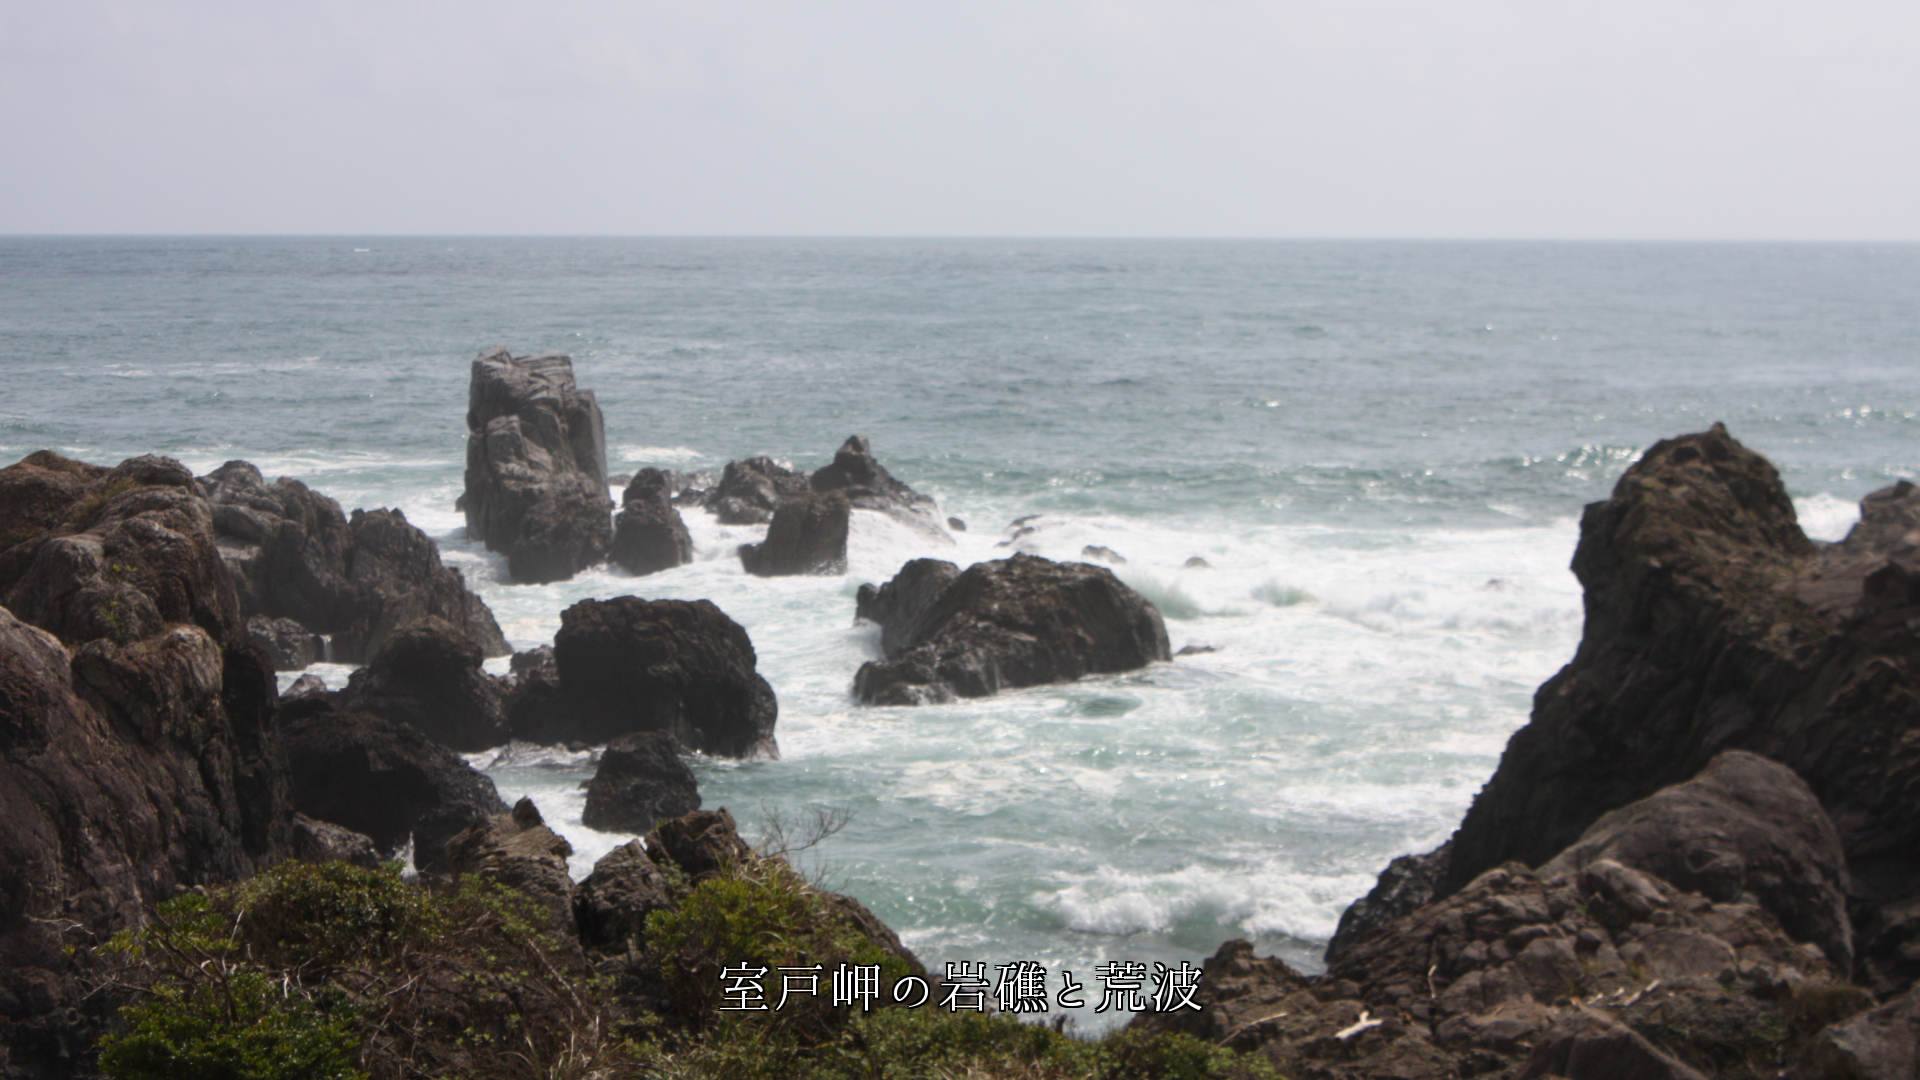 海が吠え　岩の飛沫が叫ぶ岬の断崖　やがて収まり植物たちが潮風にそよぐ　